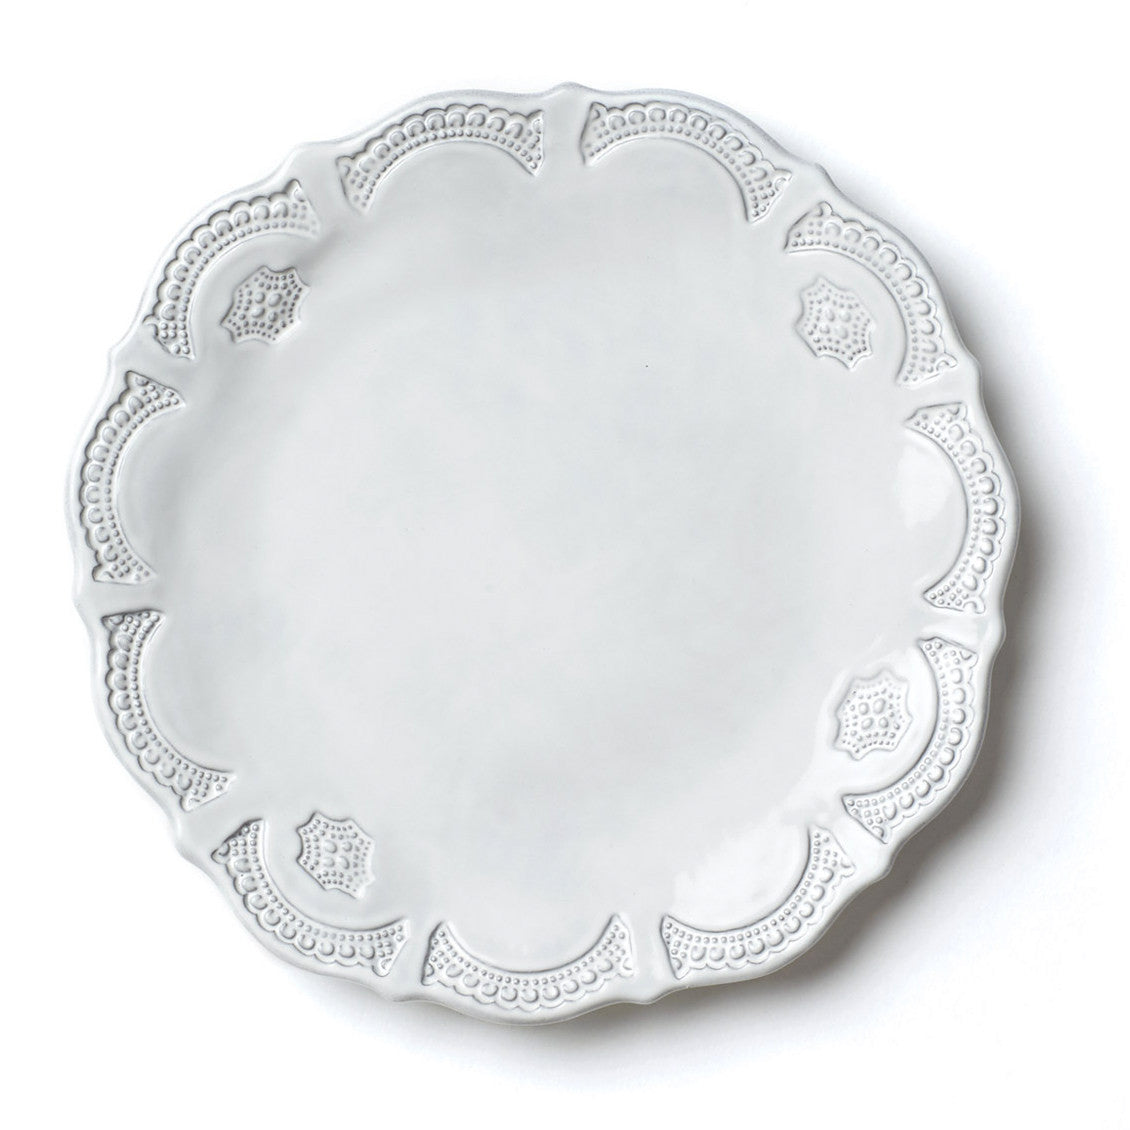 VIETRI: Incanto Lace European Dinner Plate - Artistica.com